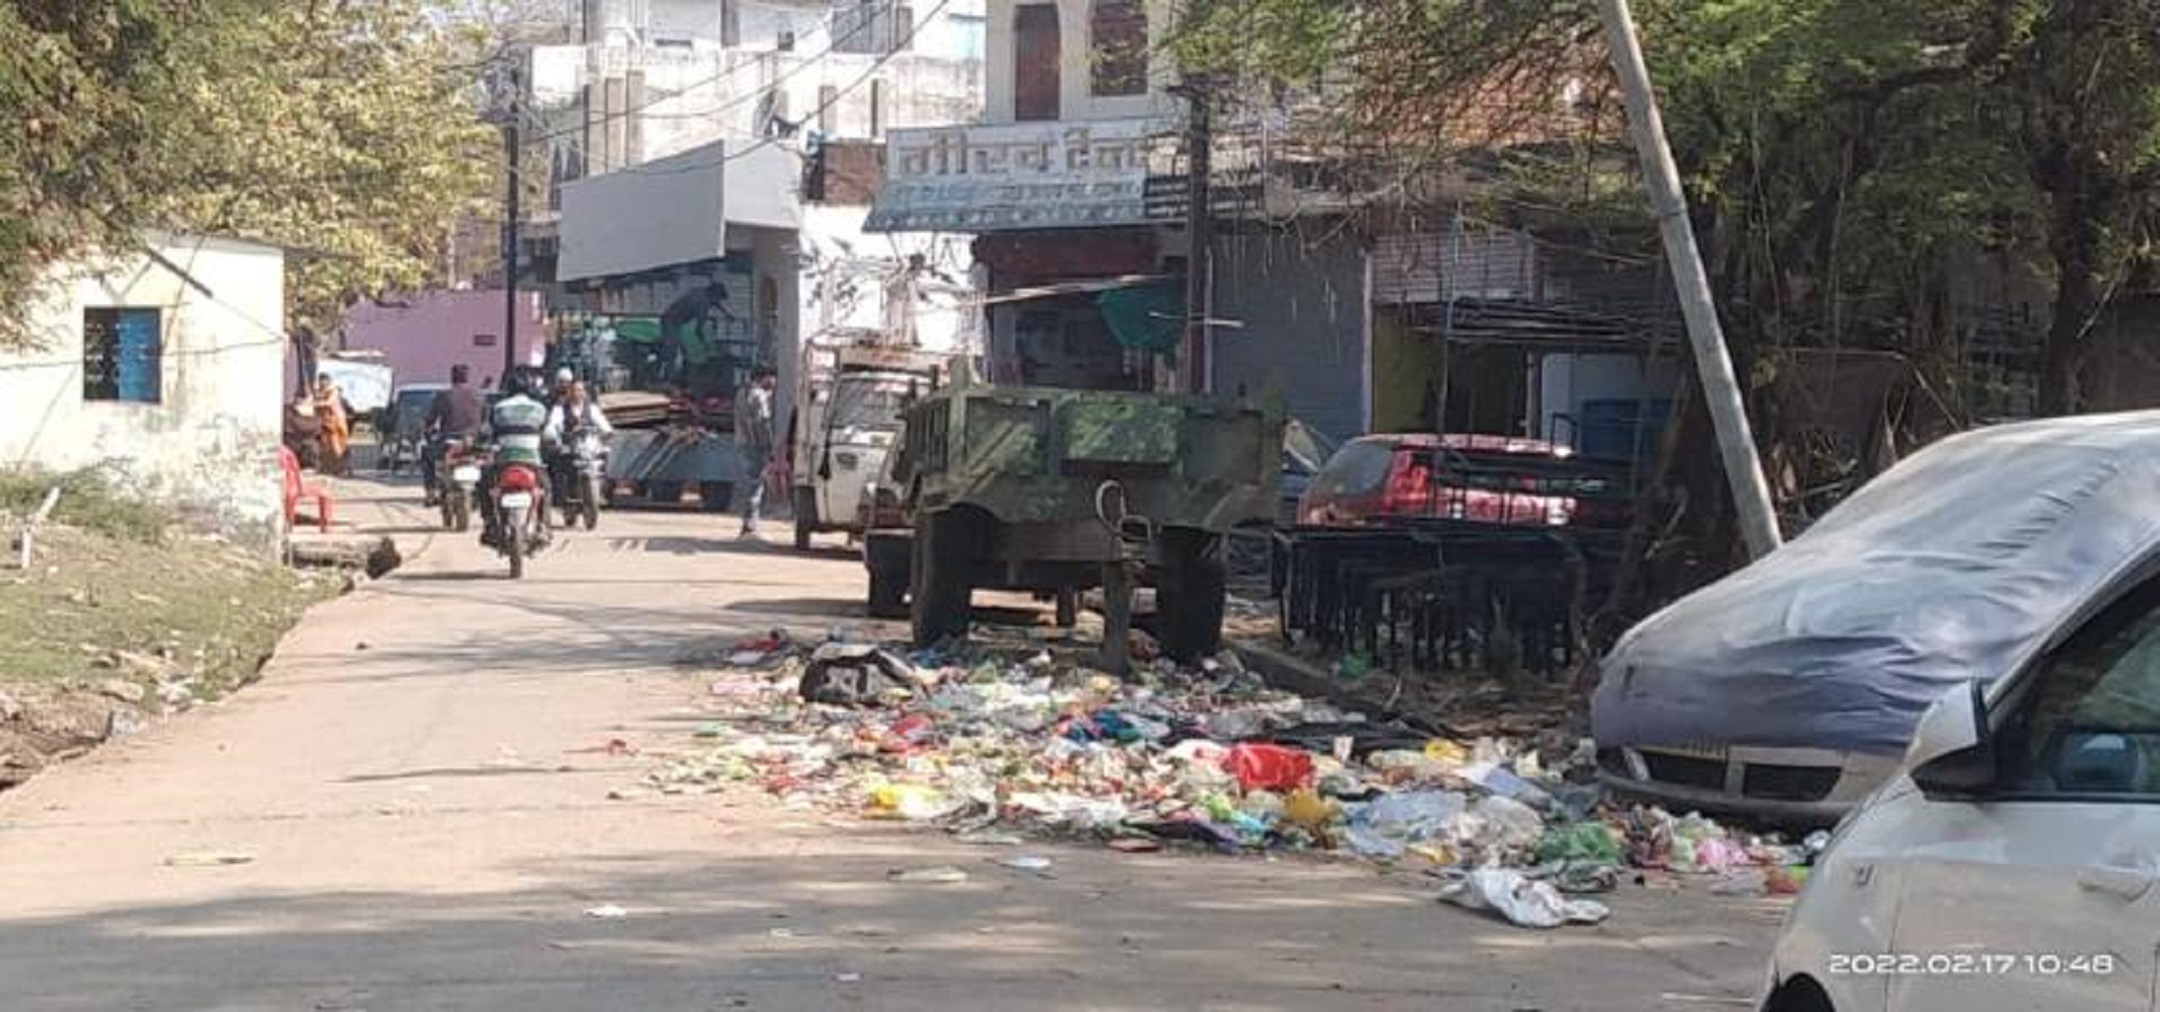 स्वच्छता अभियान बेअसर रहवासी क्षेत्रों में लगे कचरे गंदगी के ढेर